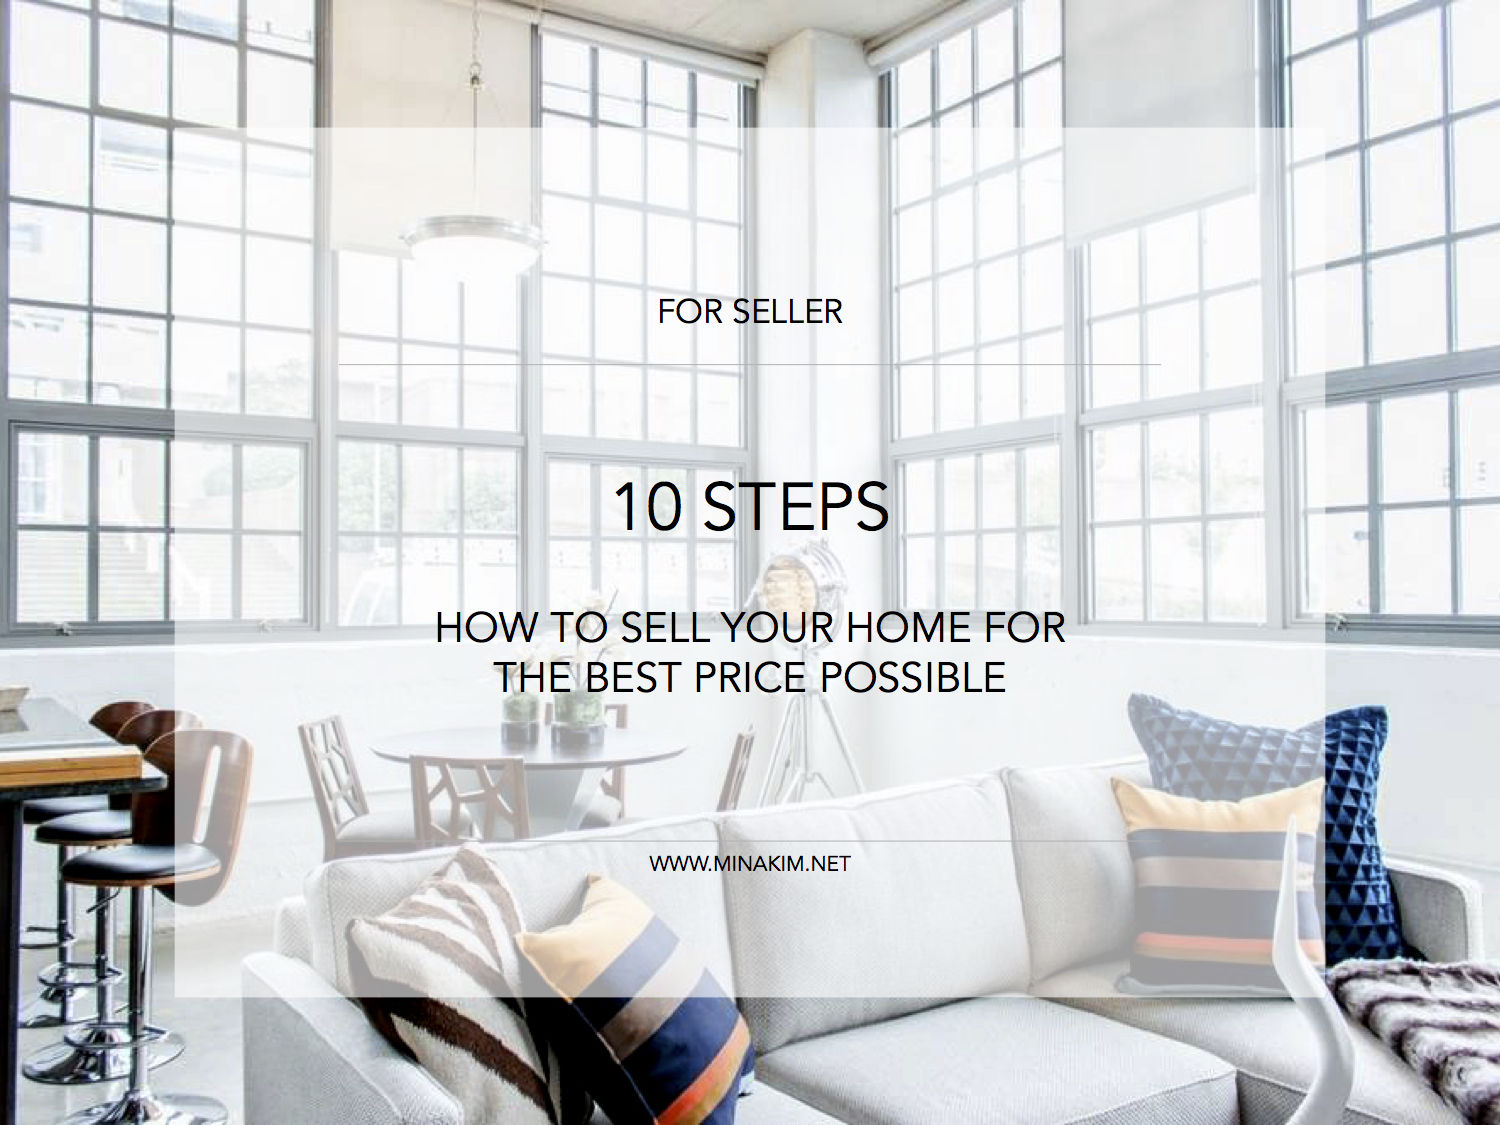 10 Steps for Seller